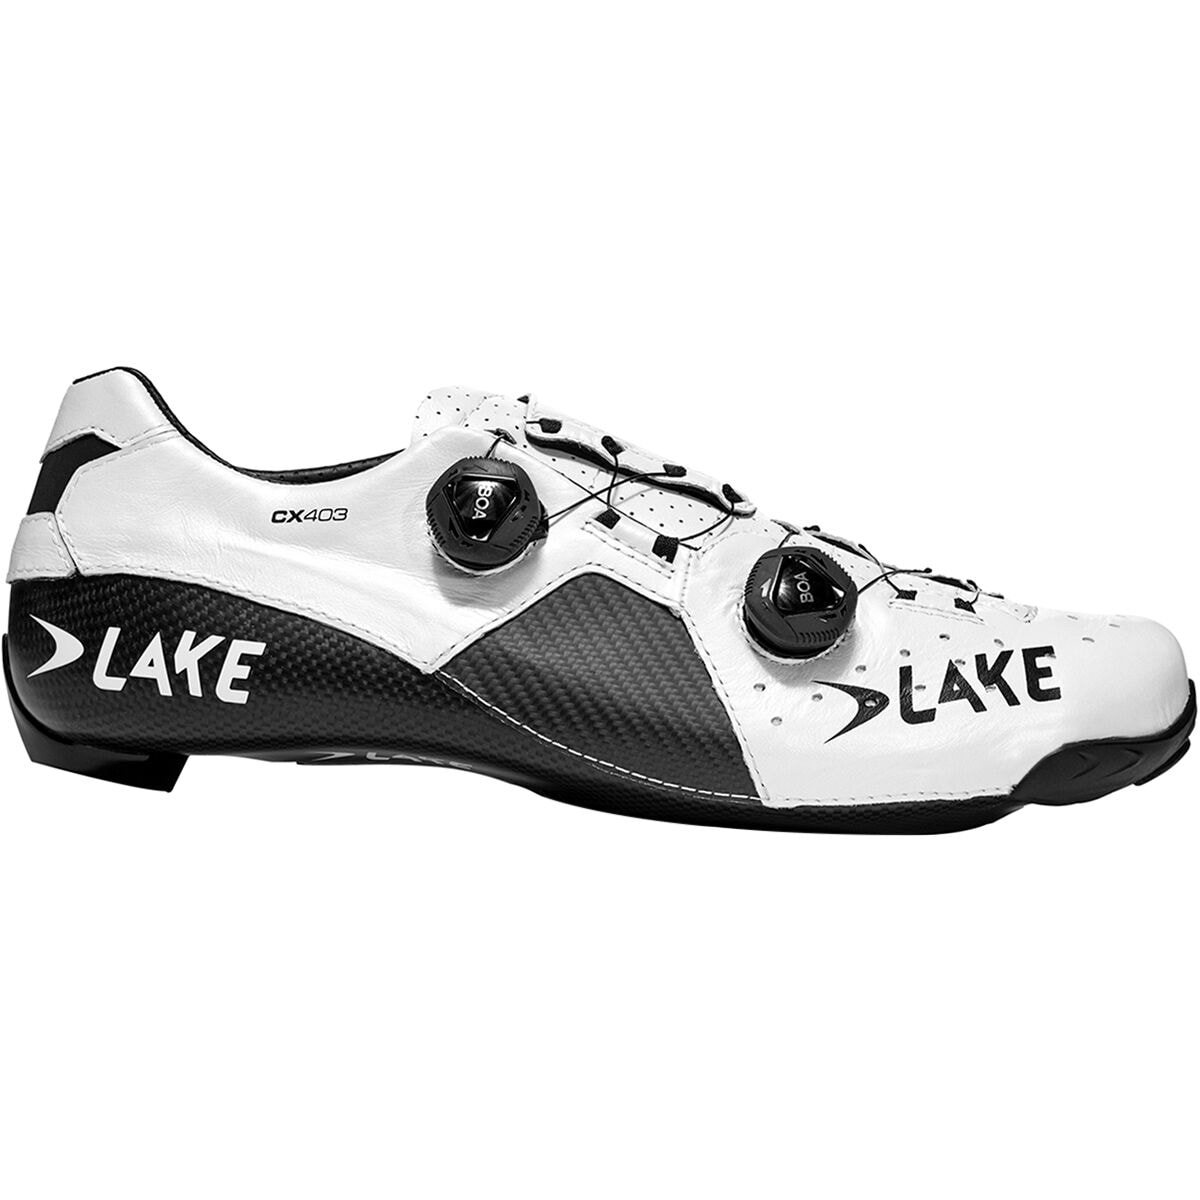 Lake CX403 Speedplay Cycling Shoe - Men's White/Black, 43.0 -  3018744-White/Black-43.0